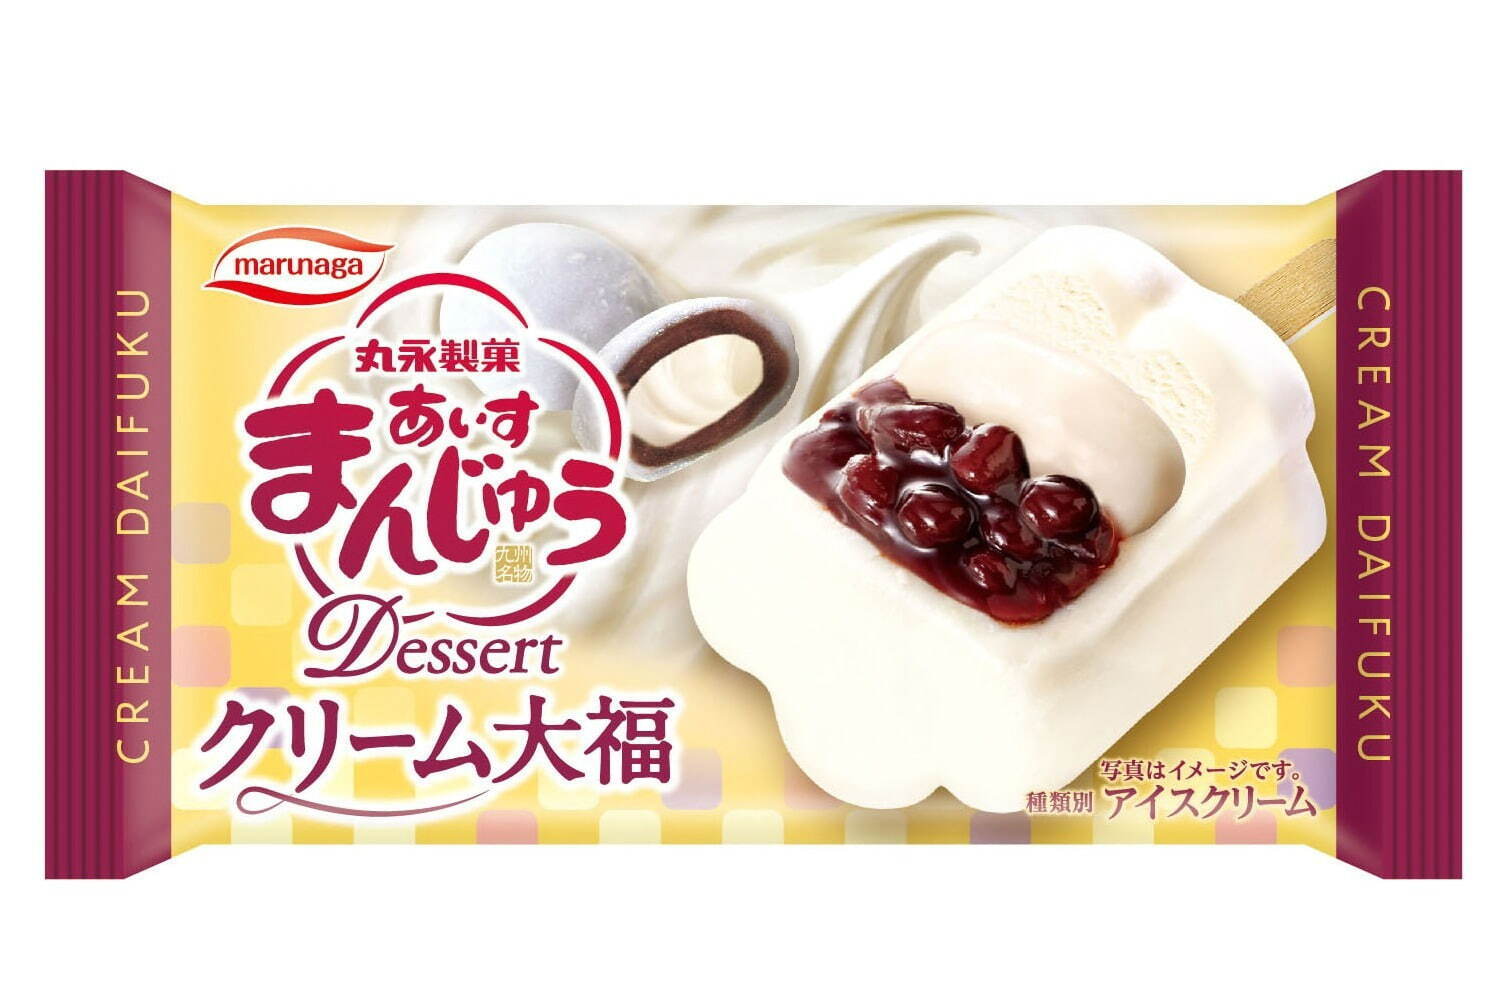 「あいすまんじゅう Dessert クリーム大福」おもち入りの新作